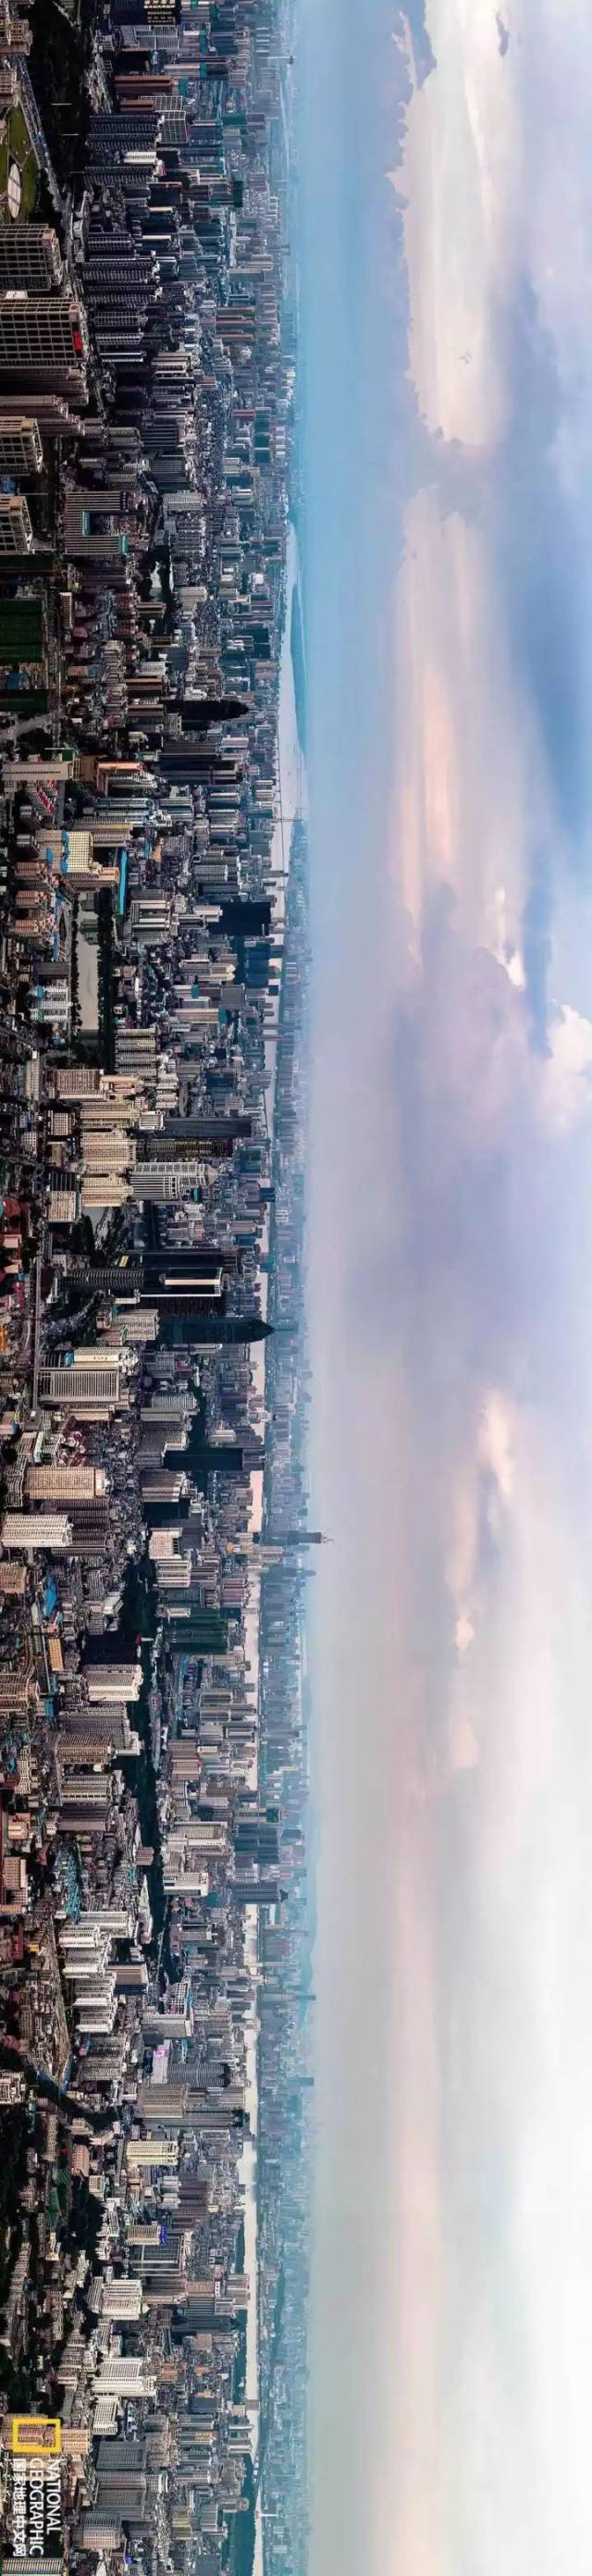 下面是我第一次登上武汉最高楼武汉中心,拍摄的全景(请将手机横过来看